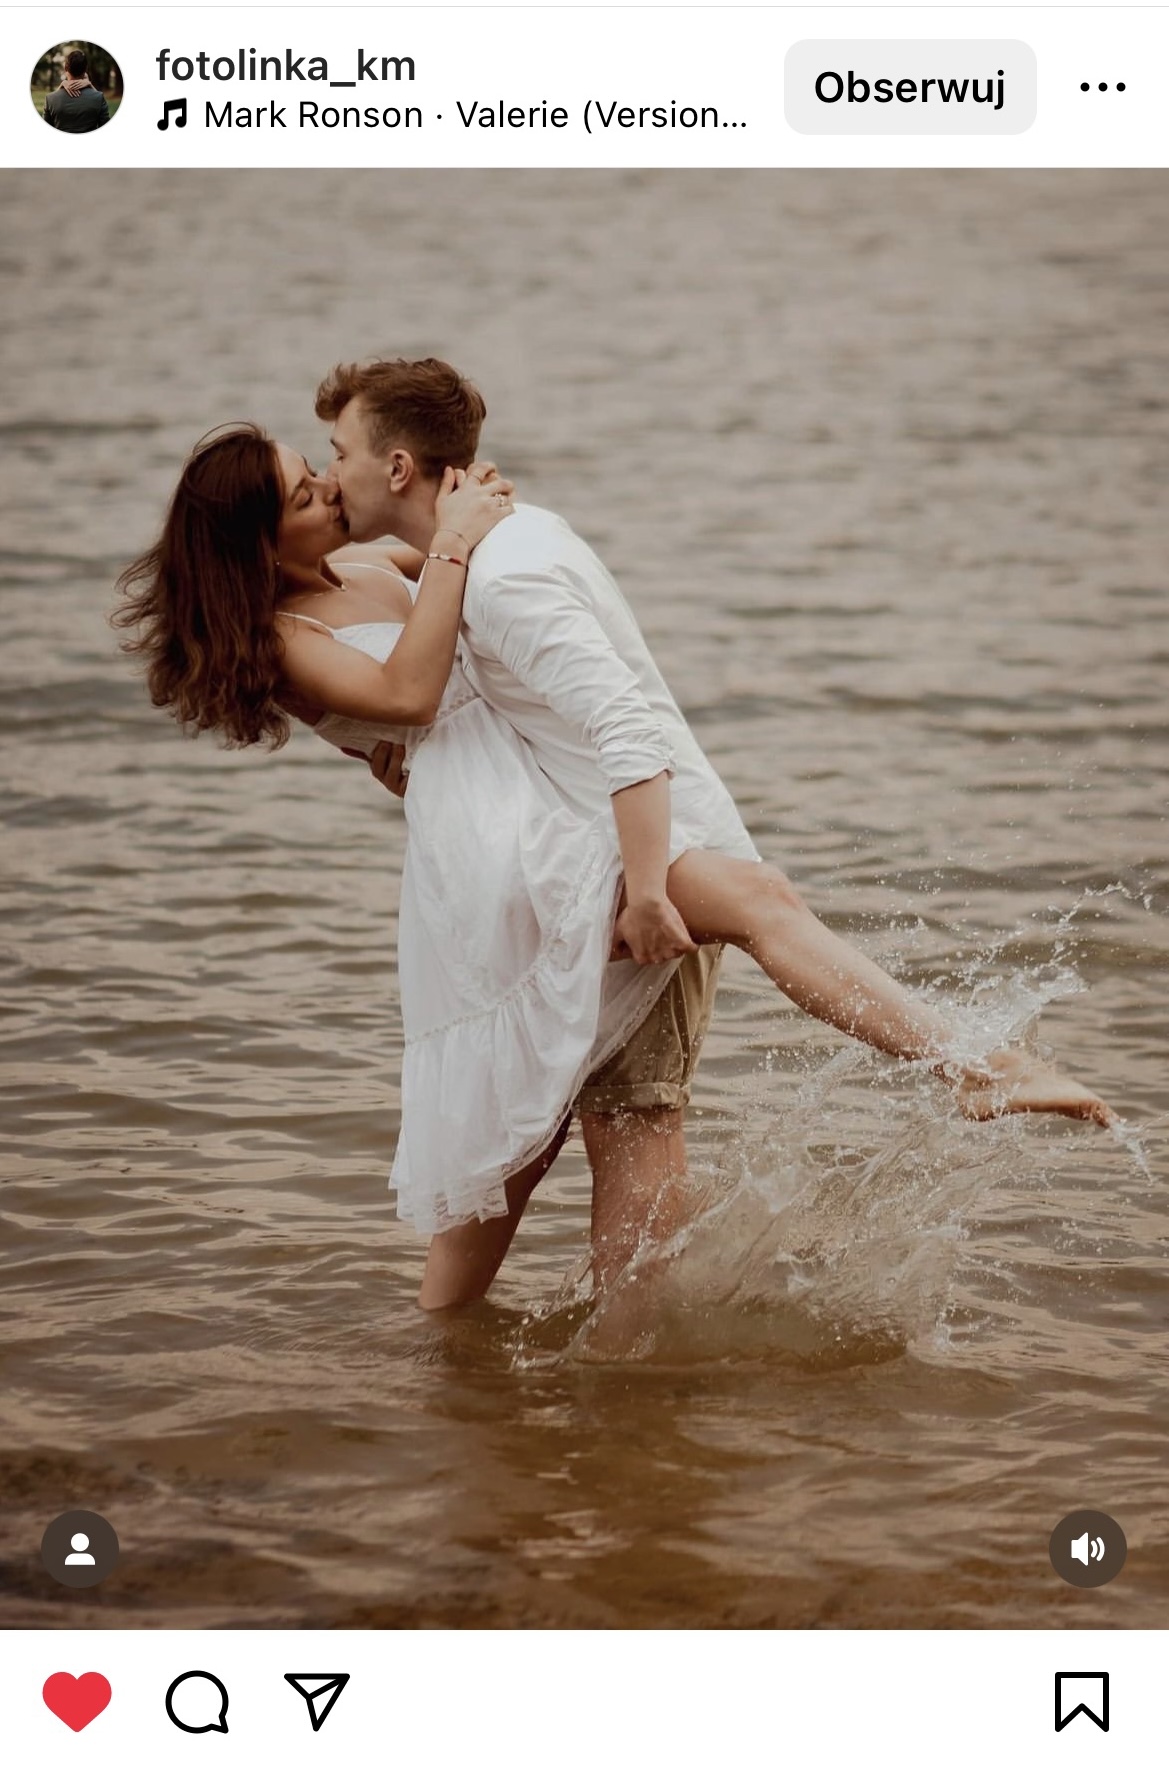 para stojąca w wodzie i całująca się #śląsktakipiękny